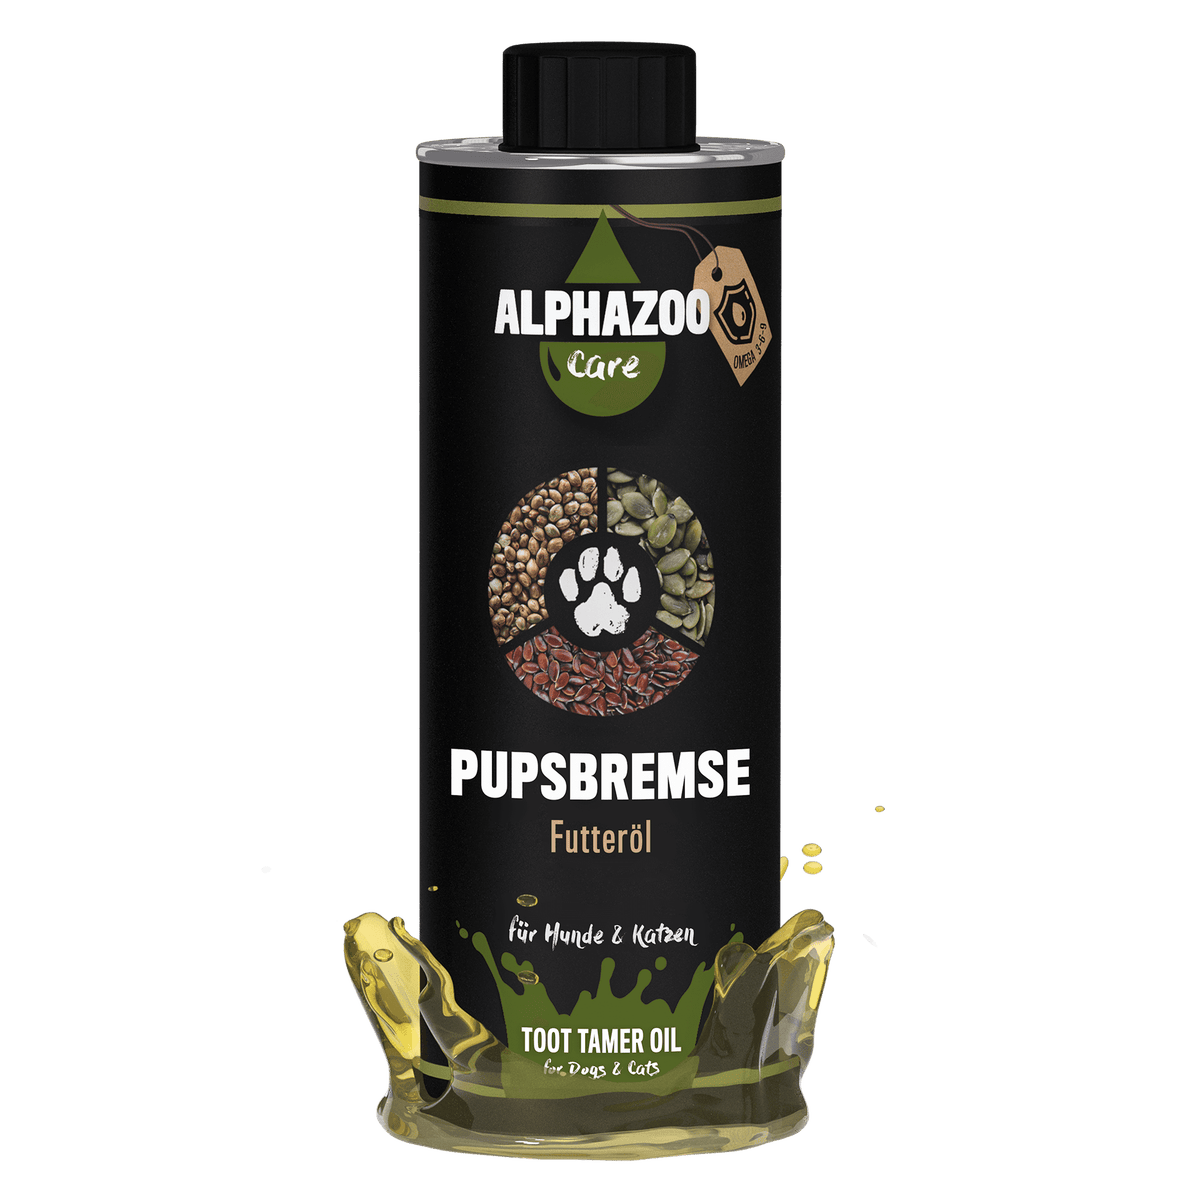 ALPHAZOO Pupsbremse Futteröl 500ml für Hunde und Katzen I Magen Darm und Verdauung